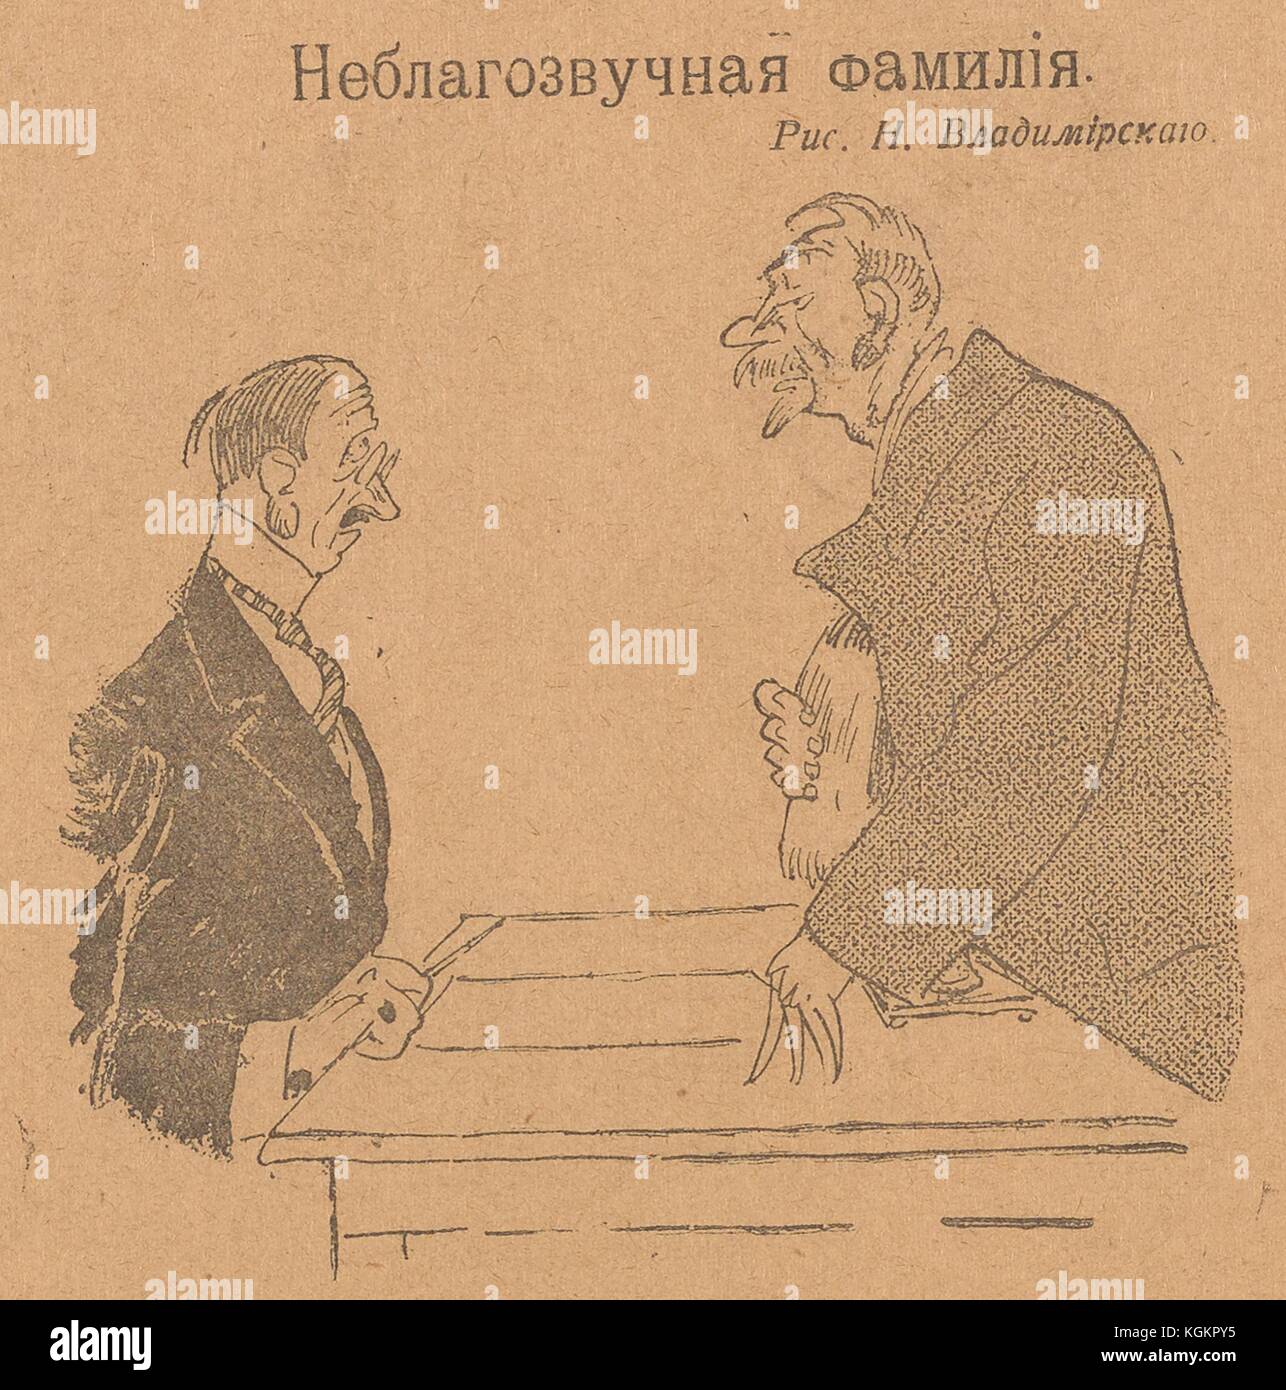 Cartoon aus der russischen Satirezeitschrift Bich (Scourge), der einen Geschäftsmann darstellt, der einem Kunden mit unglücklichem Nachnamen einen ungläubigen Blick schenkt, mit dem Text 'cacophonous Familiname', 1917. Stockfoto